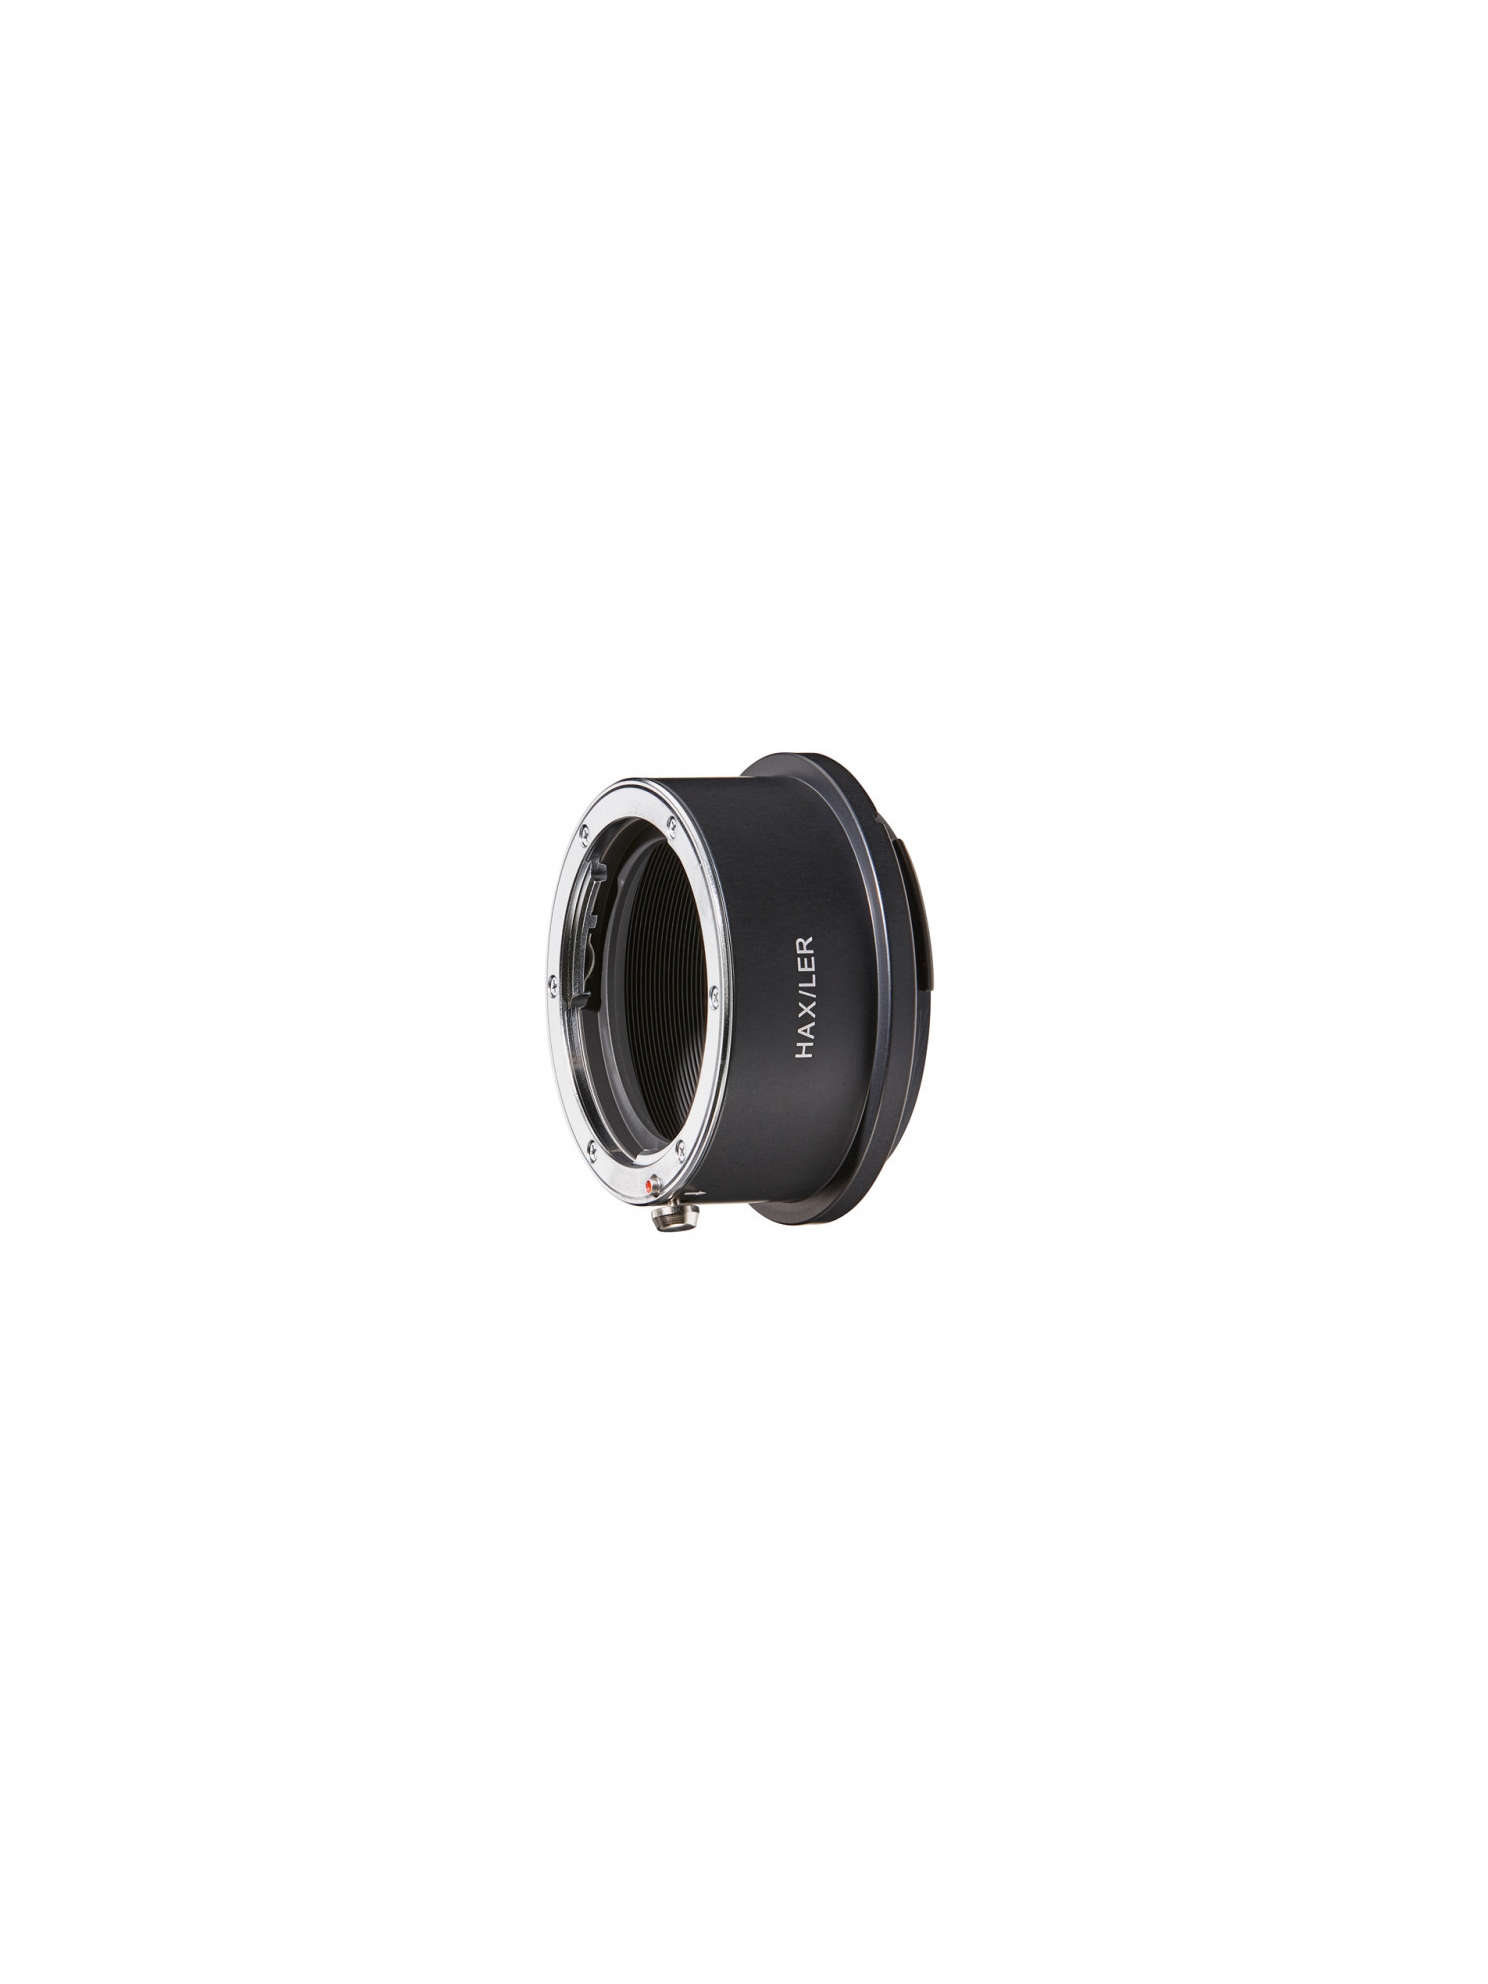 Bague adaptatrice pour optique Leica R sur boitier Hasselblad X1D-50C